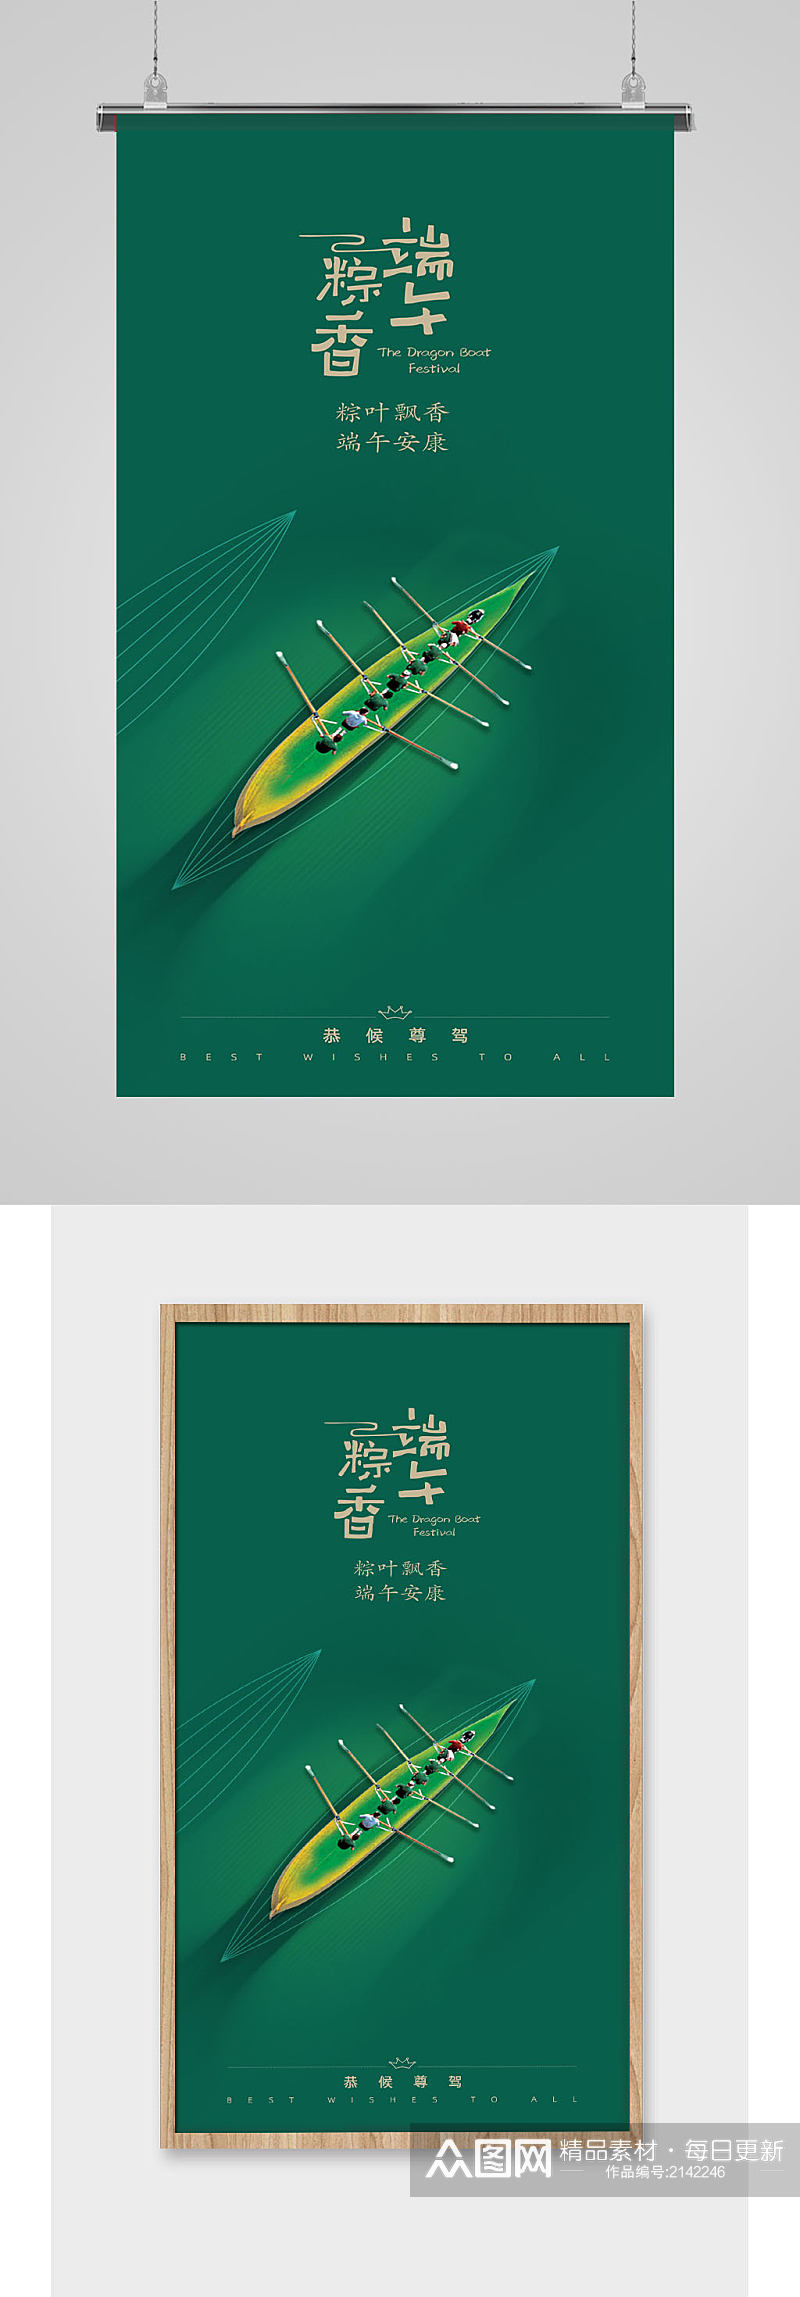 绿色端午节龙舟插画海报素材